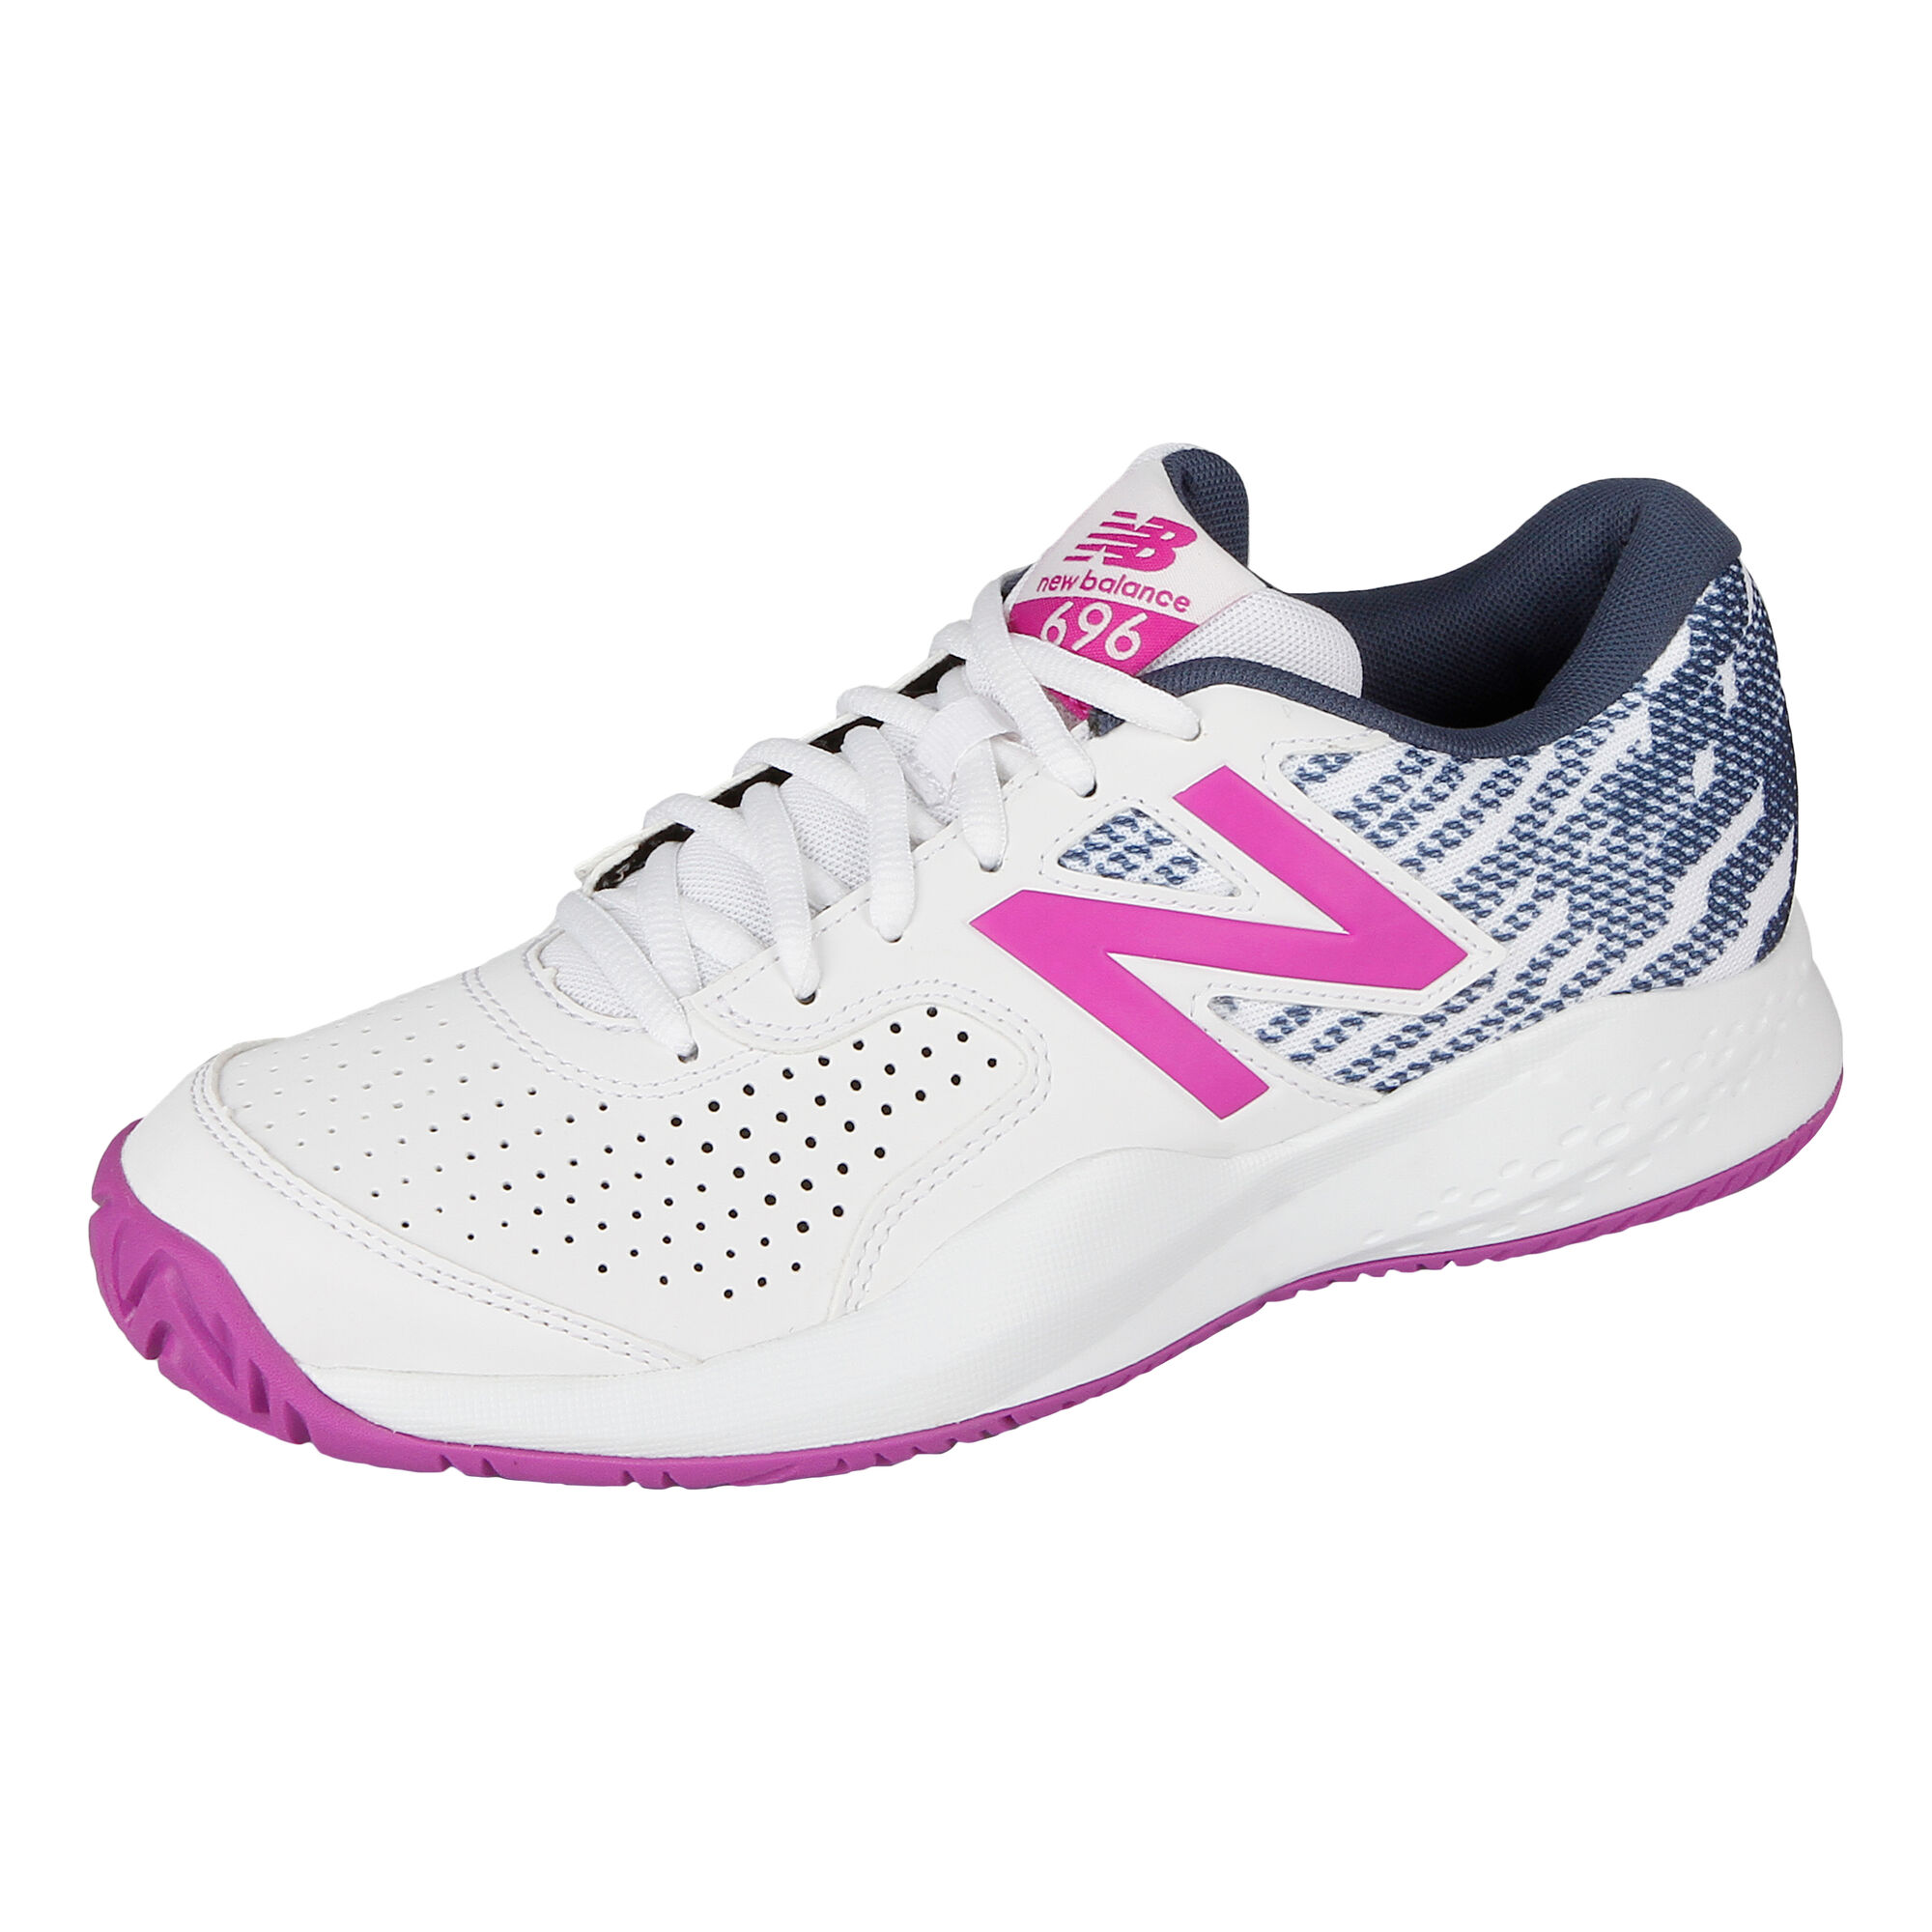 Buy New Balance 696 V3 All Court Shoe Women White Violet online